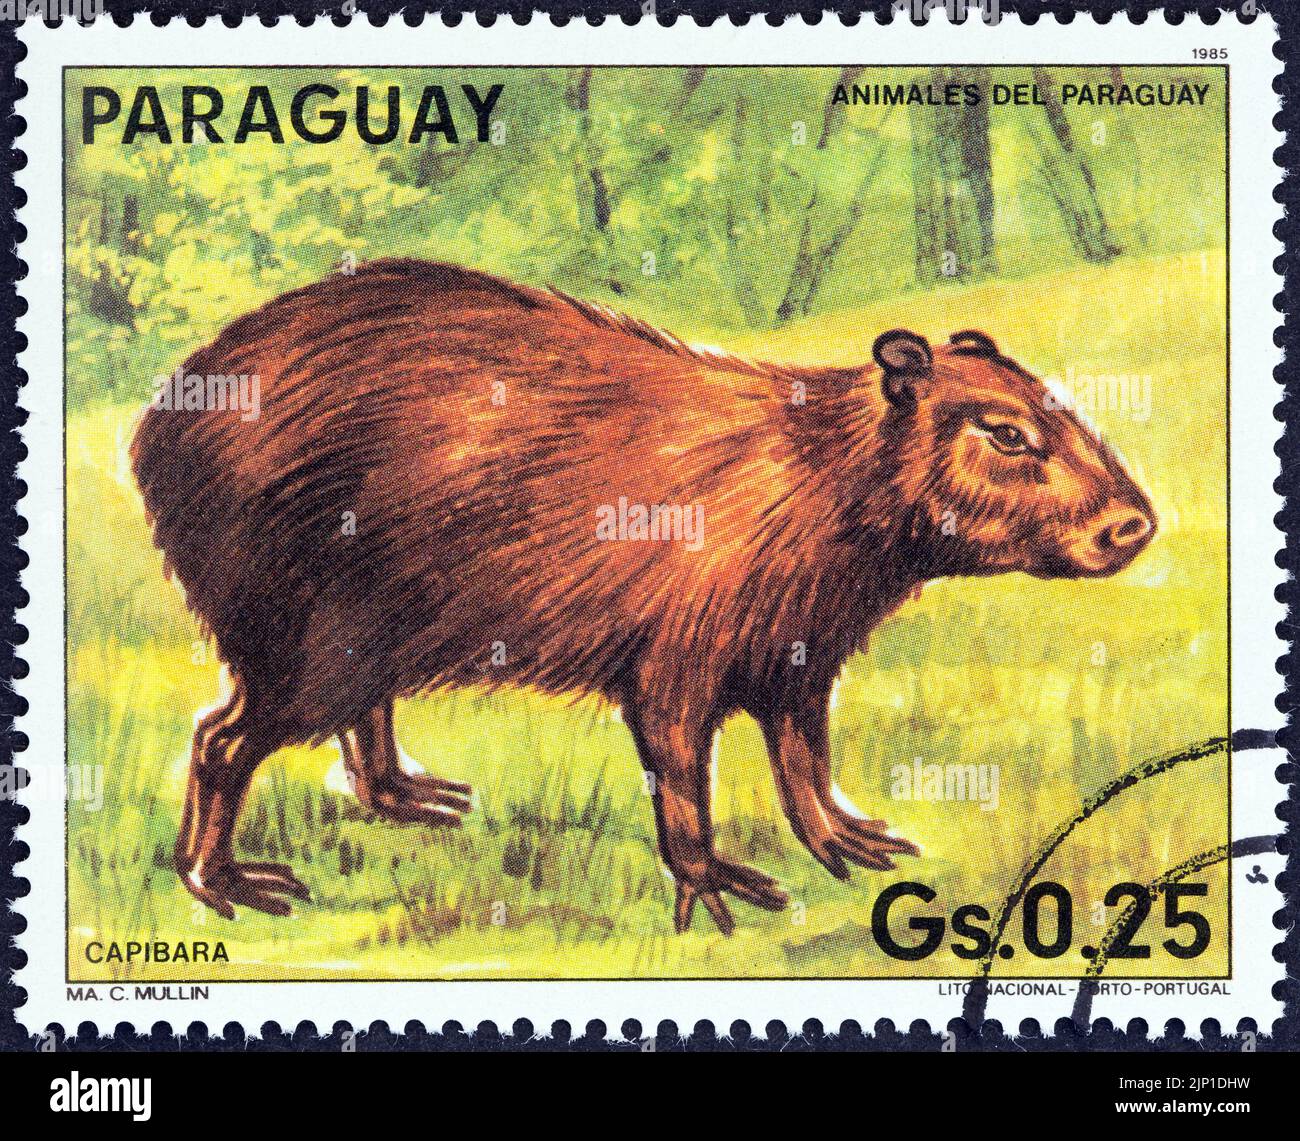 PARAGUAY - VERS 1985: Un timbre imprimé au Paraguay montre un Capybara (Hydrochoerus hydrochaeris), vers 1985. Banque D'Images